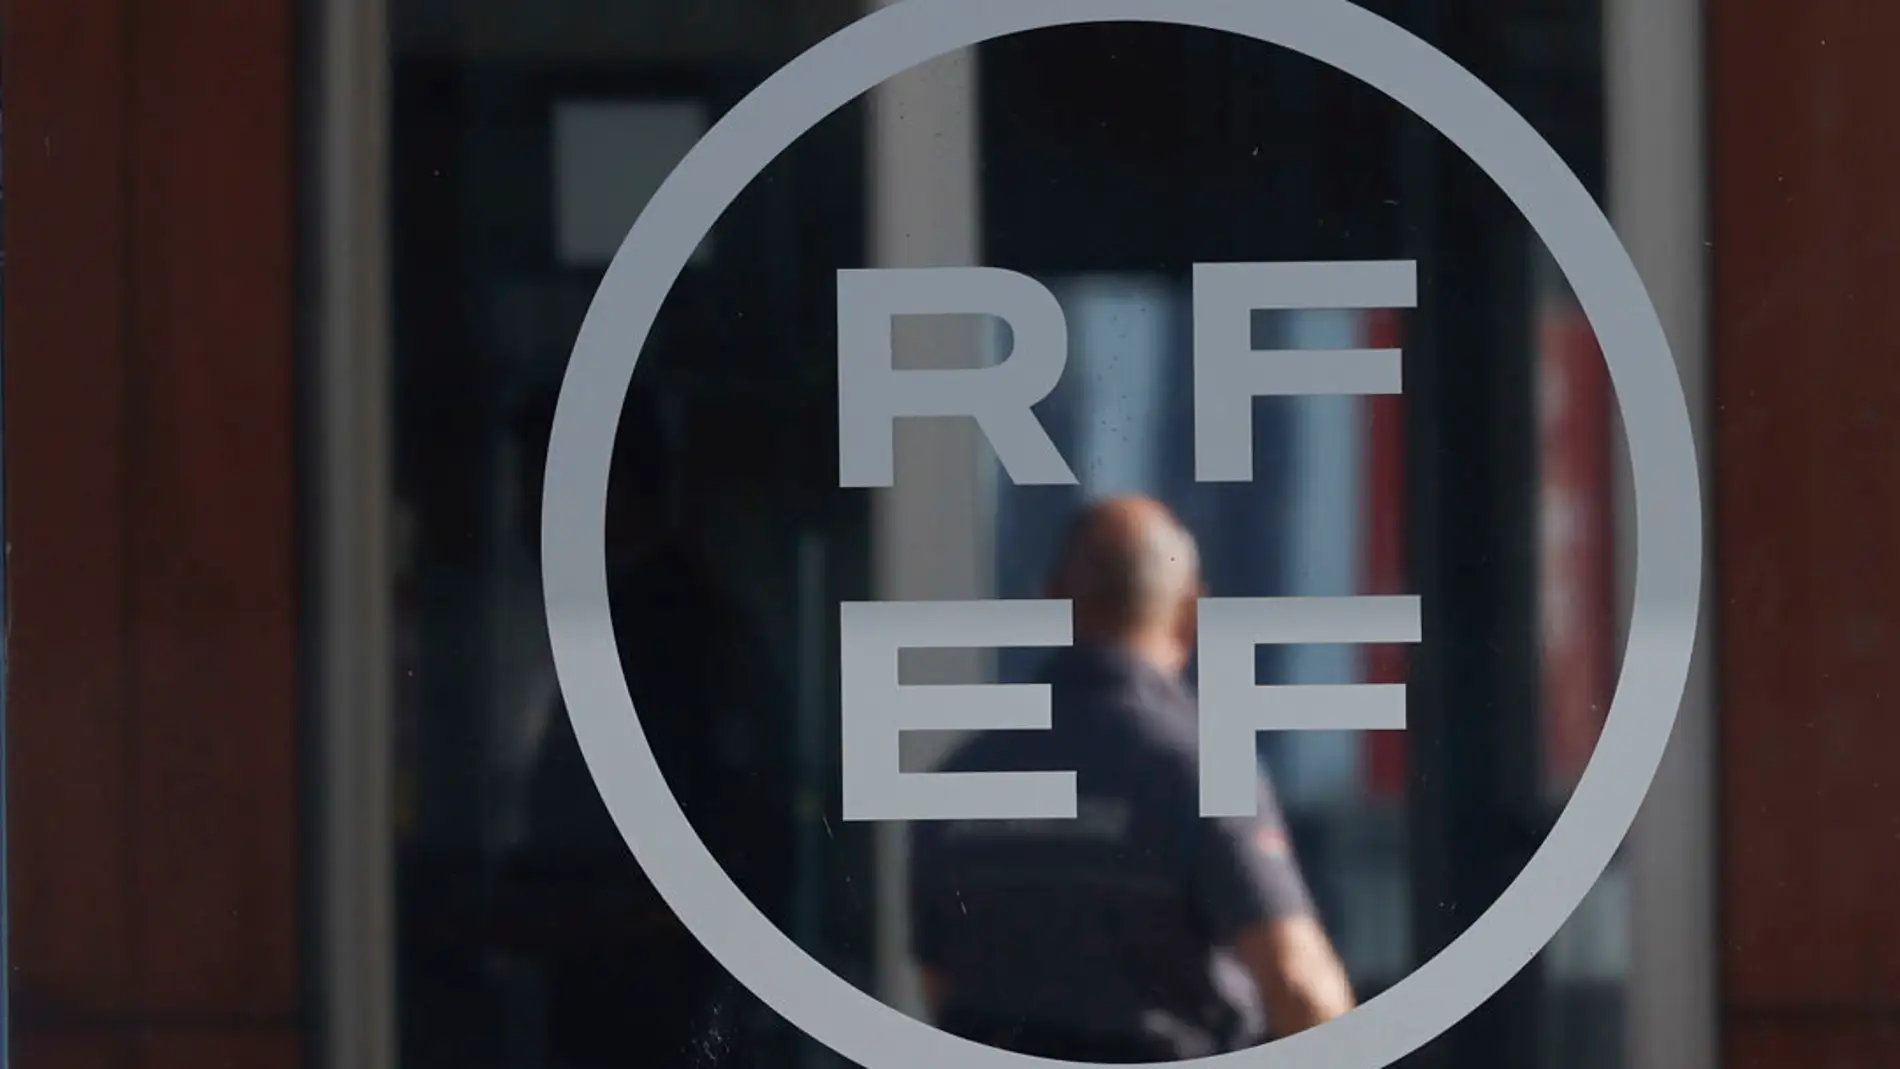  La RFEF pide disculpas al mundo del fútbol por la conducta inapropiada de Rubiales